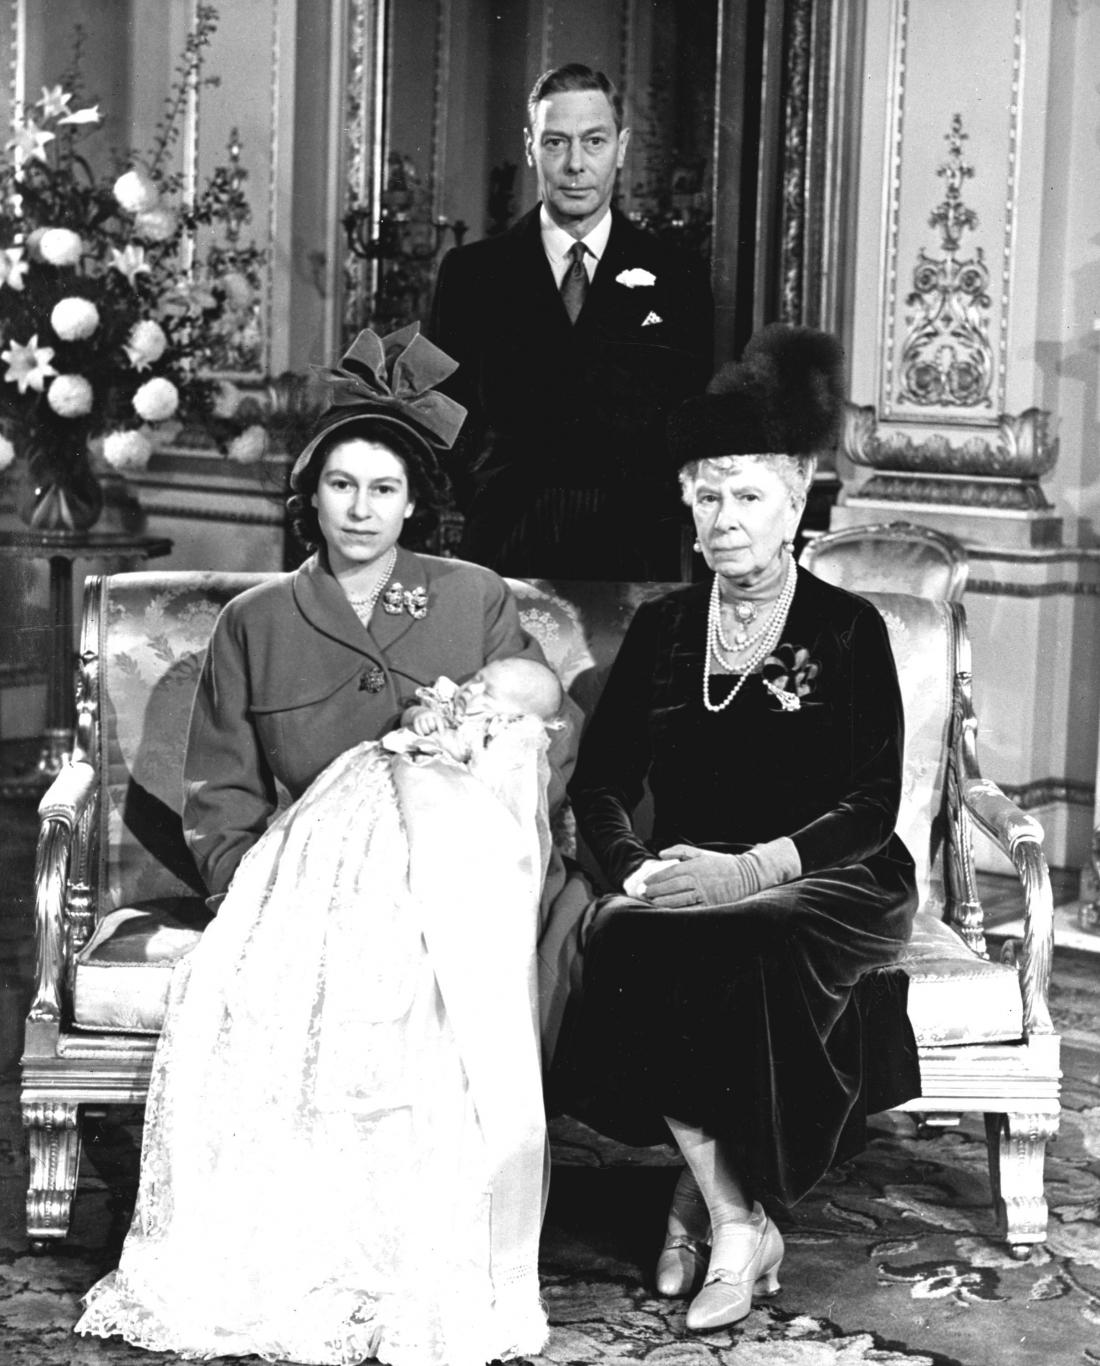 Elizabeta preden je postala kraljica na sliki leta 1948 z očetom in tedanjim kraljem Jurijem VI. ter babico kraljico Marijo. 